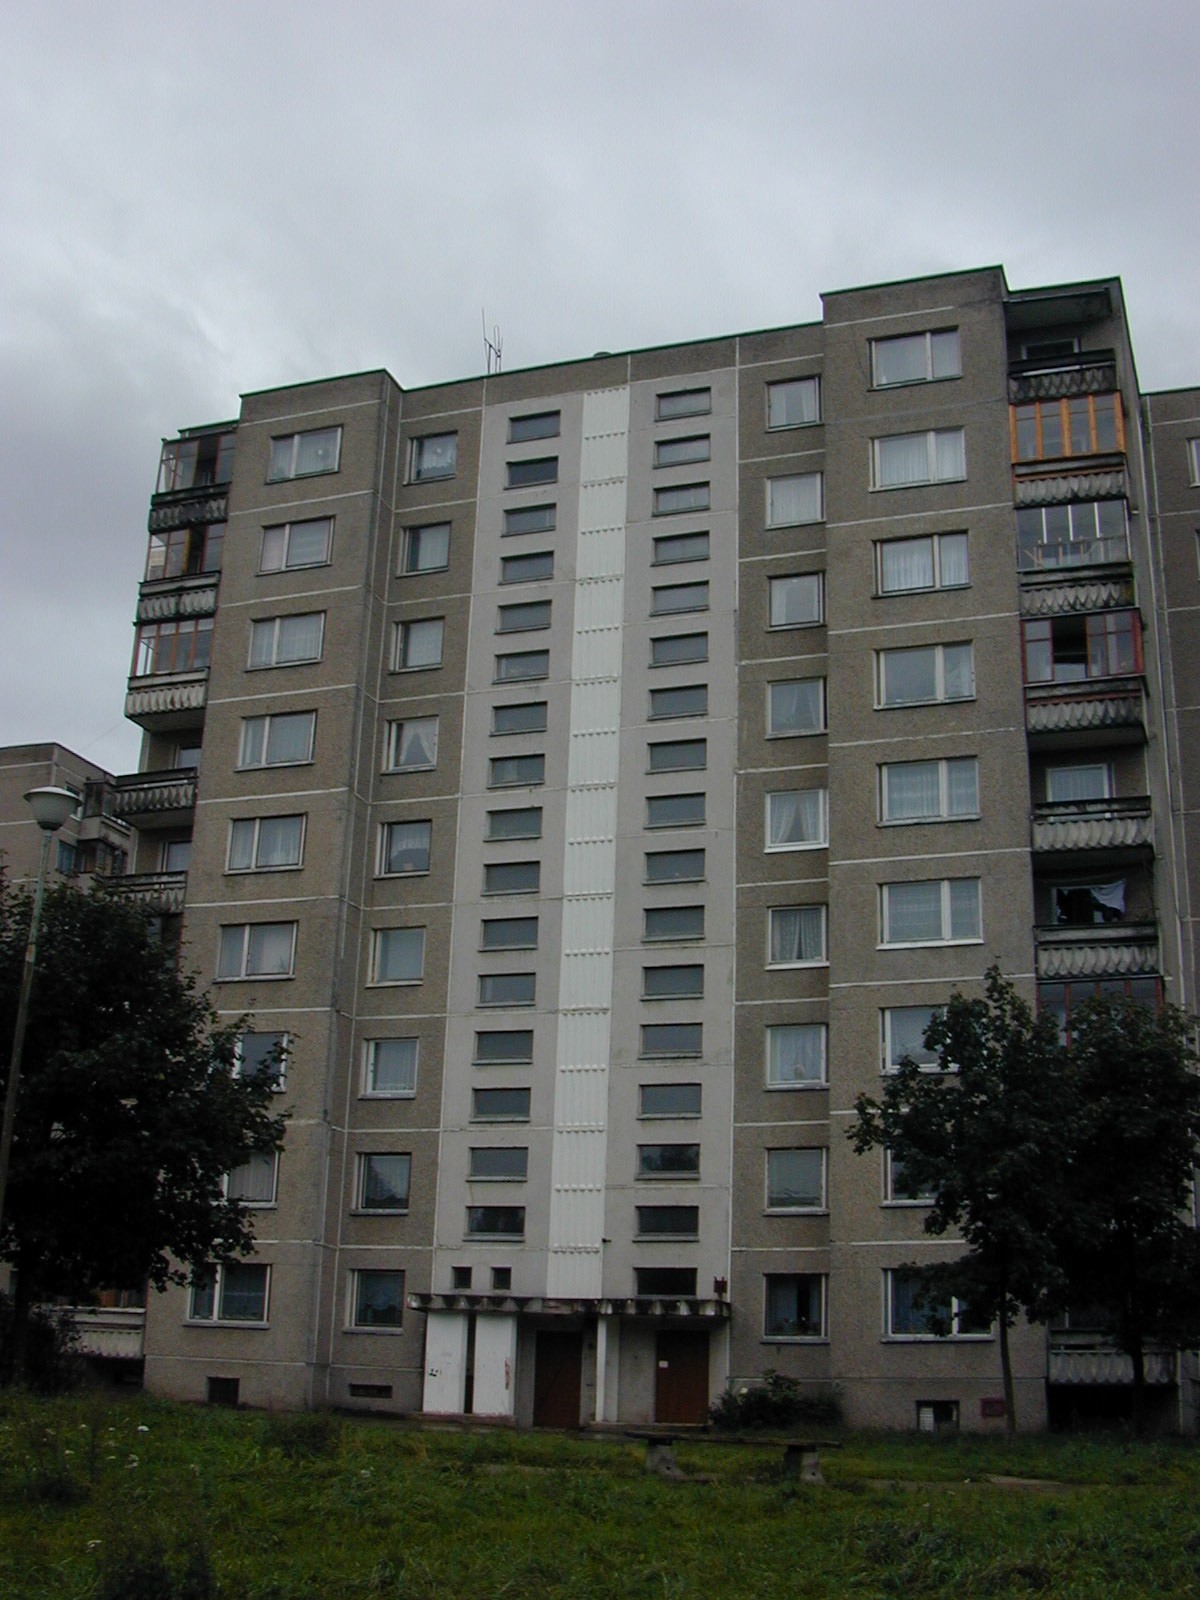 Rygos g. 39, Vilnius